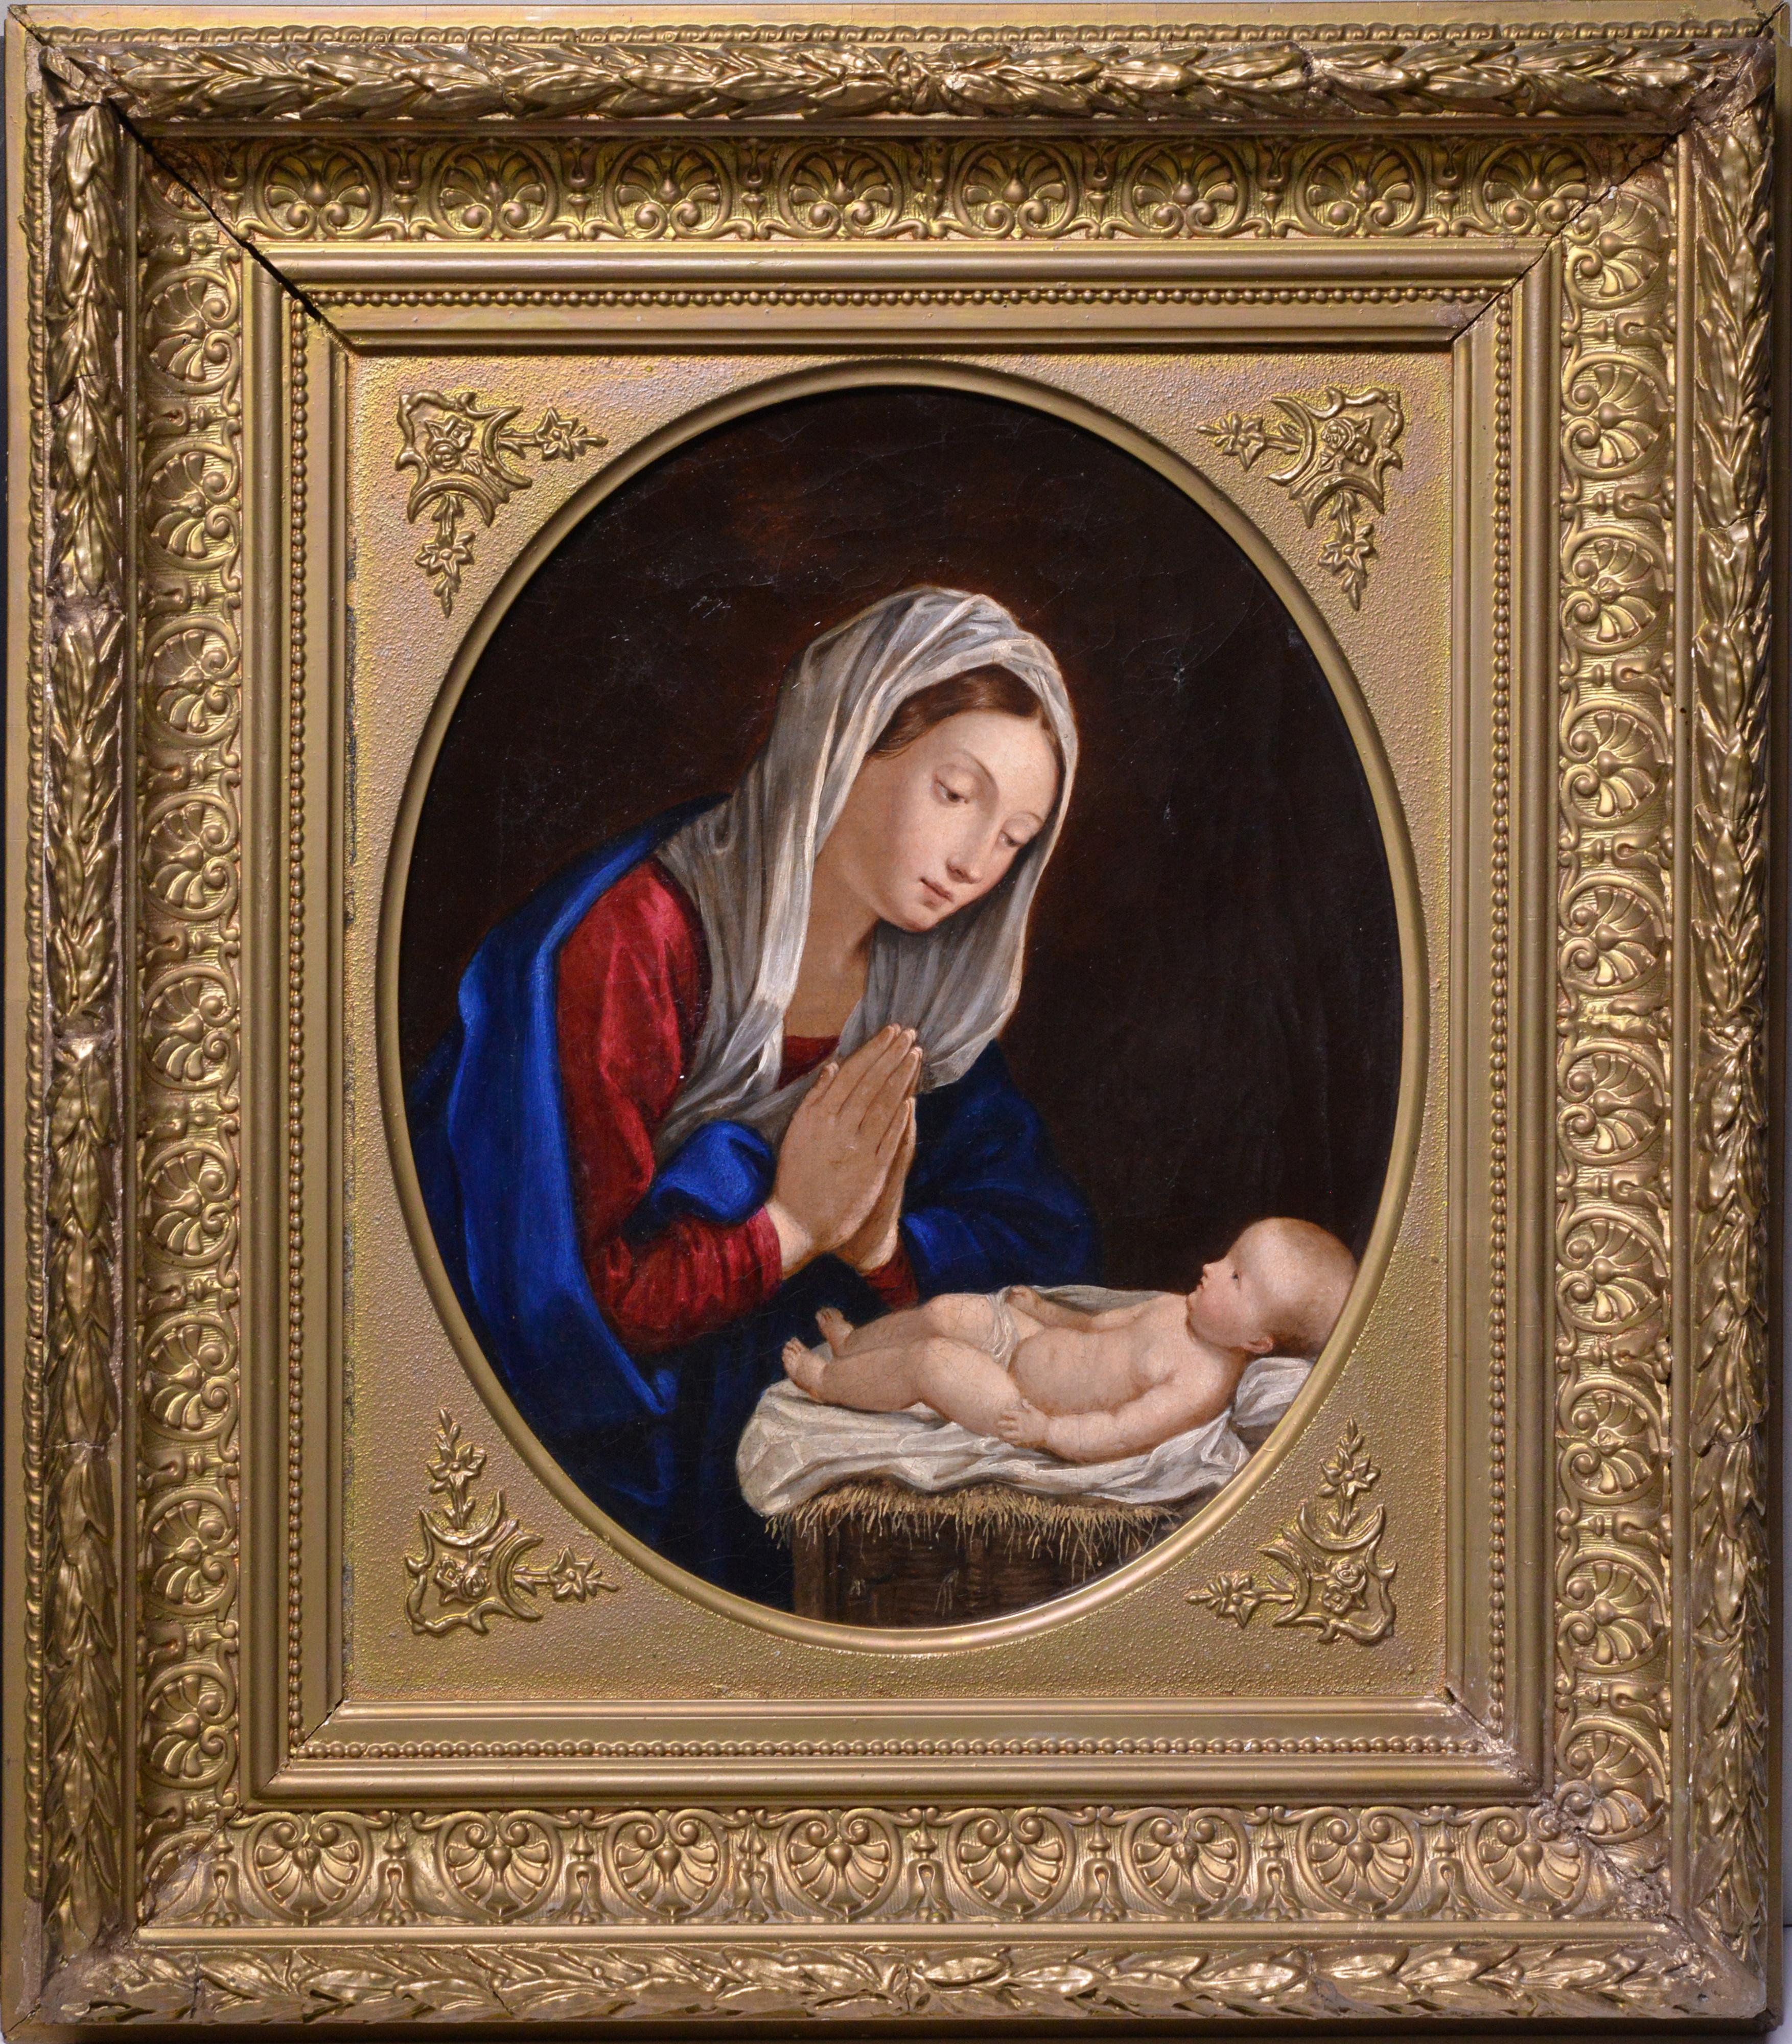 Religiöse Szene, Madonna sitzt und bittet über Kind, Ölgemälde aus dem 19. Jahrhundert